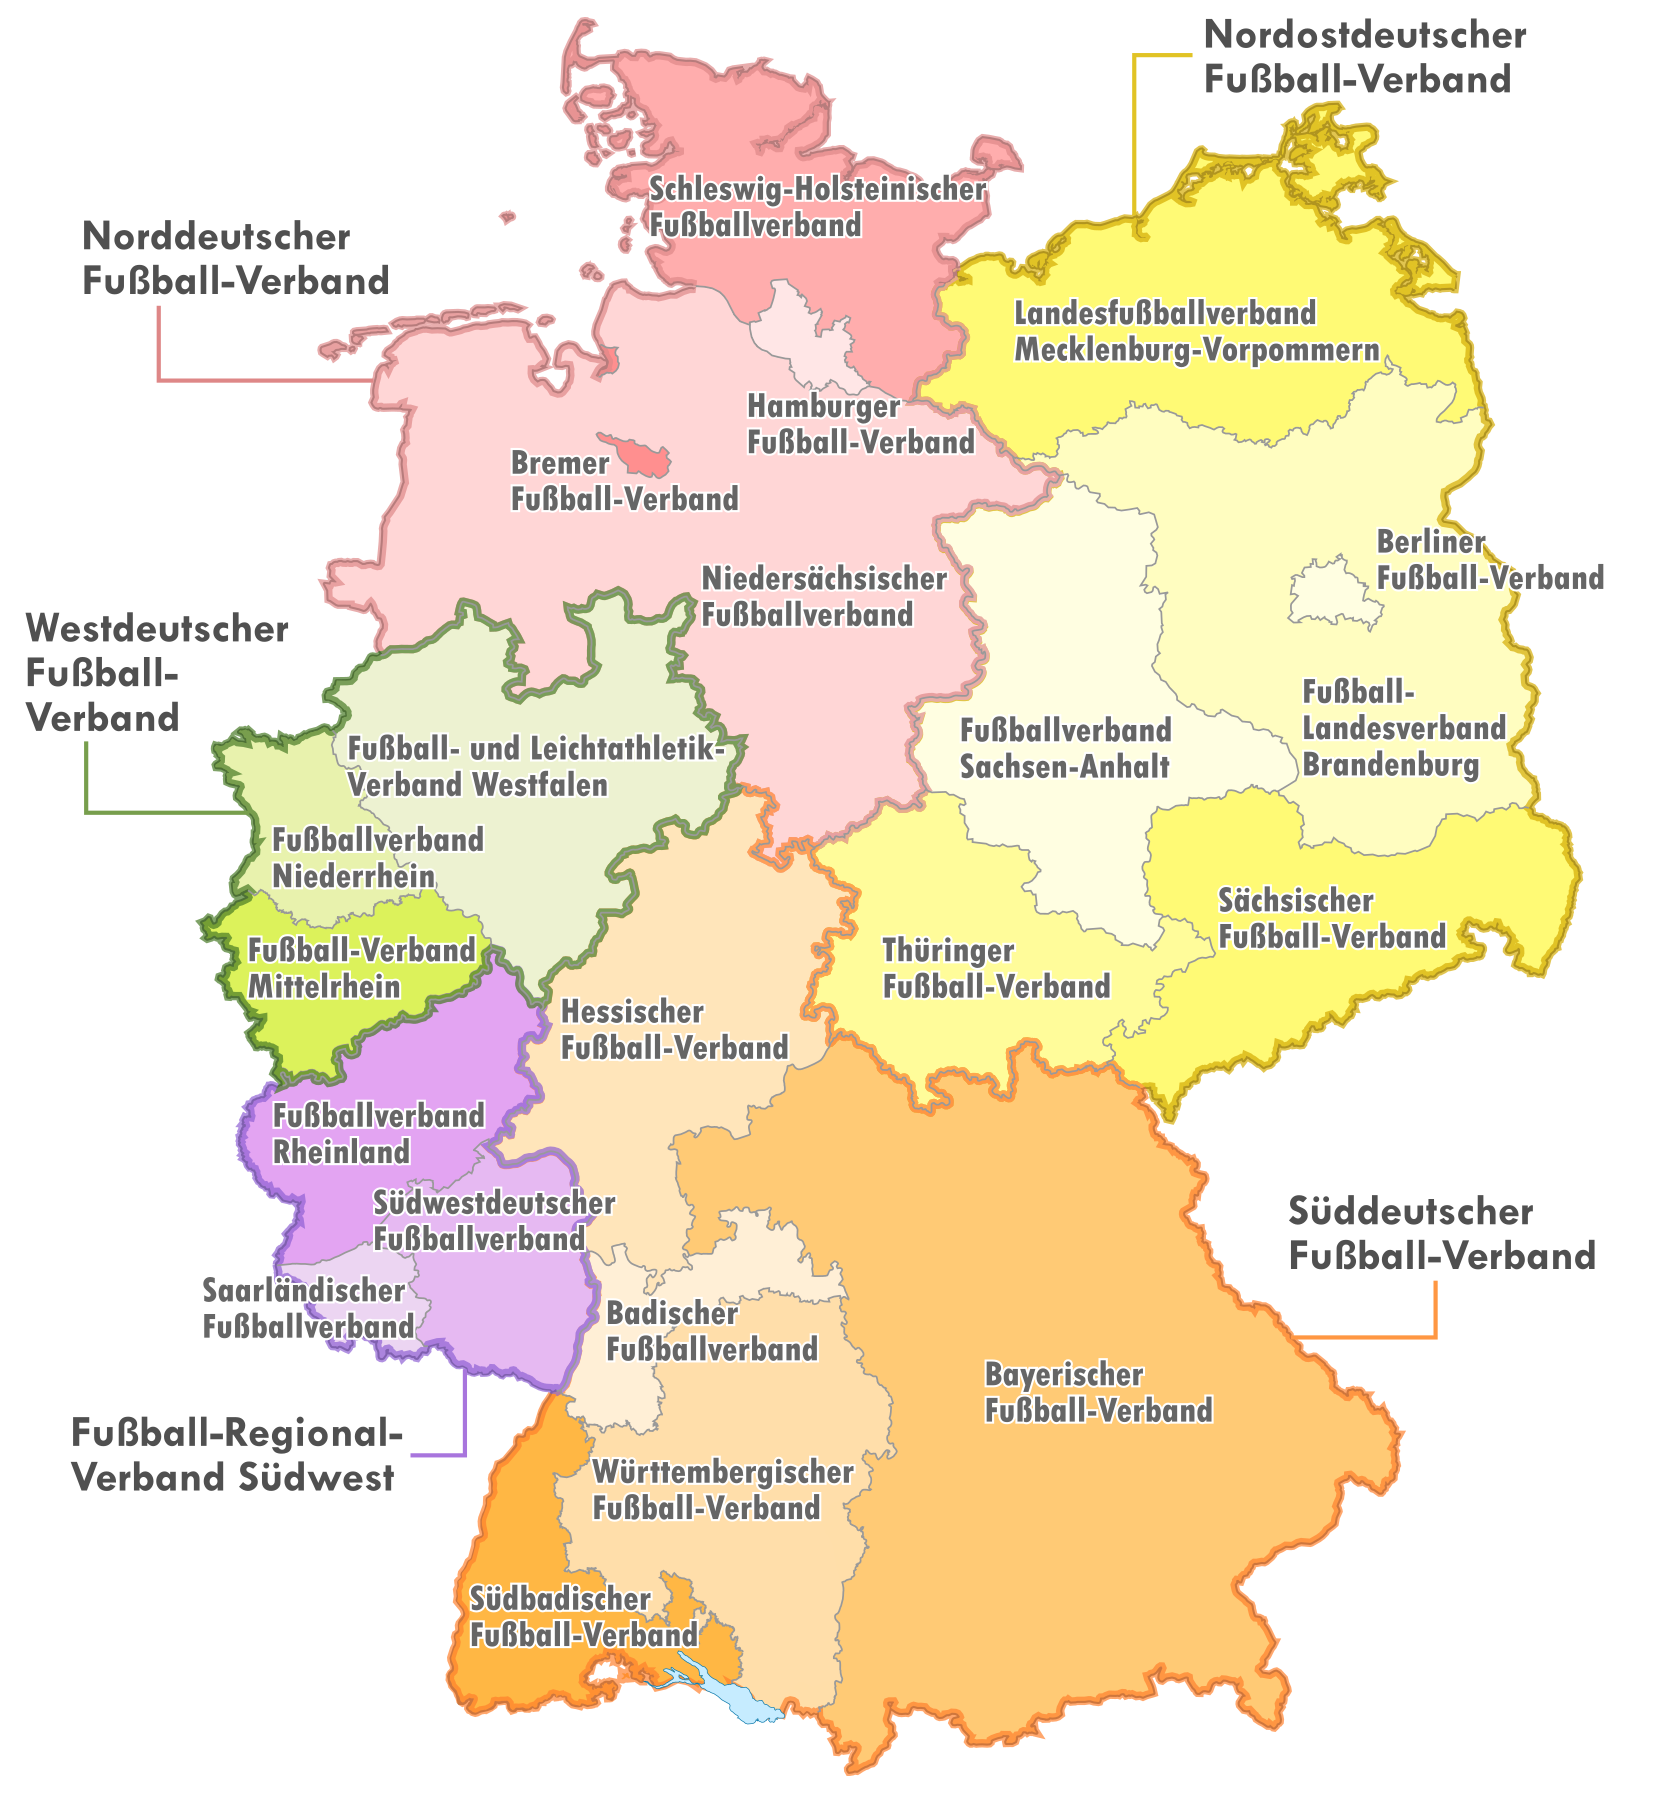 Oberliga, Qualification for Regionalliga North